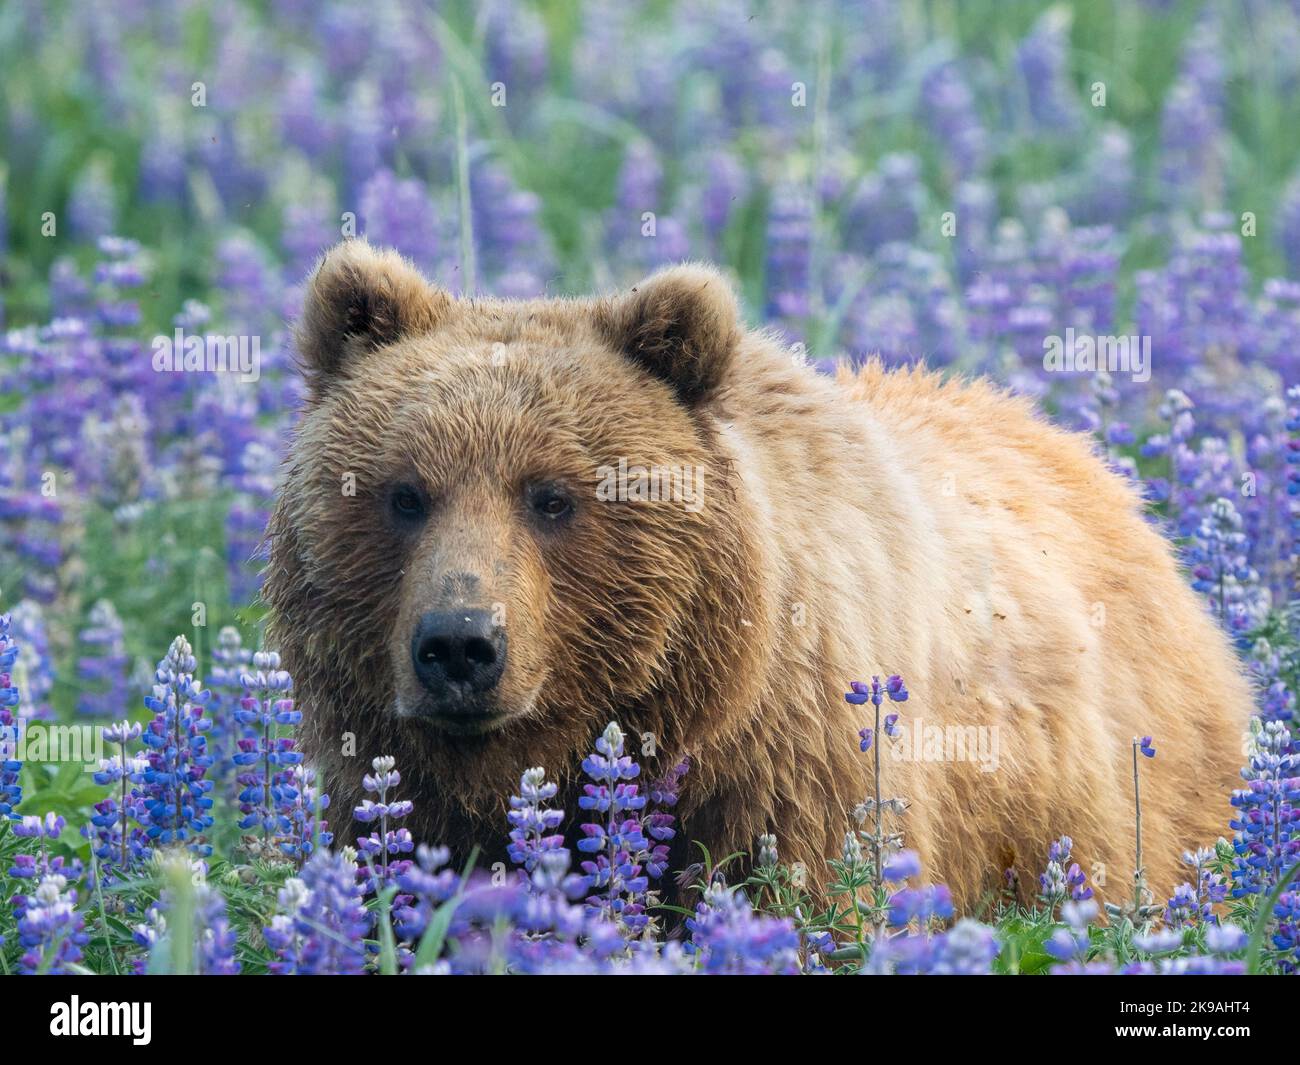 Gefangen von Ron Niebrugge. Alaska: DIESE WUNDERSCHÖNEN Bilder zeigen einen Braunbären, der ein Feld mit leuchtend violetten Blumen erkundet und sich auf dem Feld faulenzt. Eine ima Stockfoto